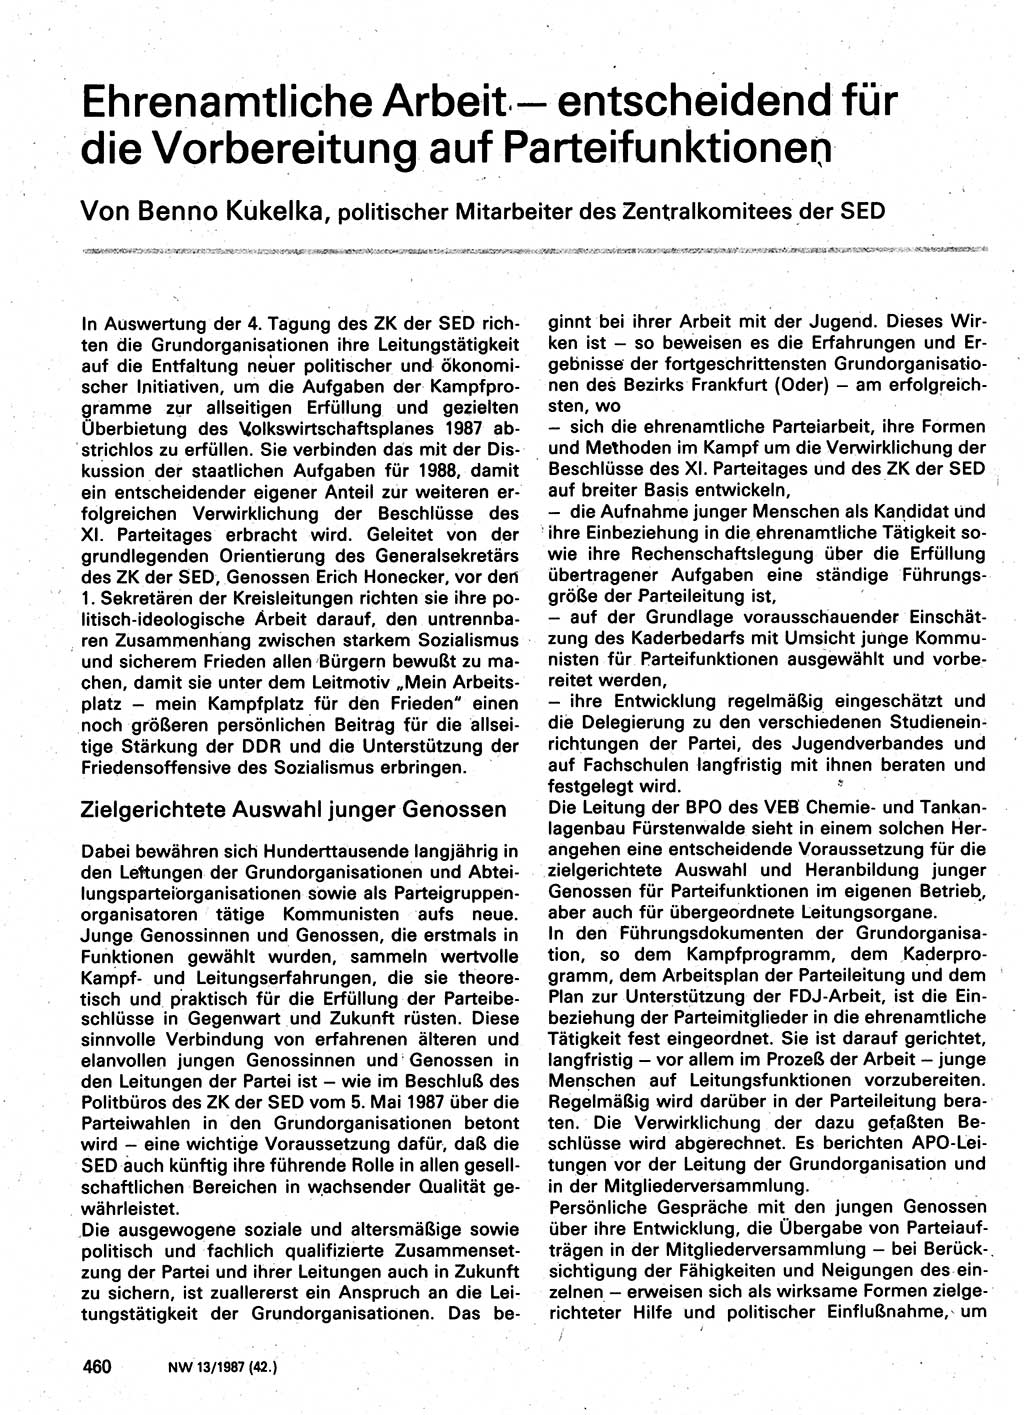 Neuer Weg (NW), Organ des Zentralkomitees (ZK) der SED (Sozialistische Einheitspartei Deutschlands) für Fragen des Parteilebens, 42. Jahrgang [Deutsche Demokratische Republik (DDR)] 1987, Seite 460 (NW ZK SED DDR 1987, S. 460)